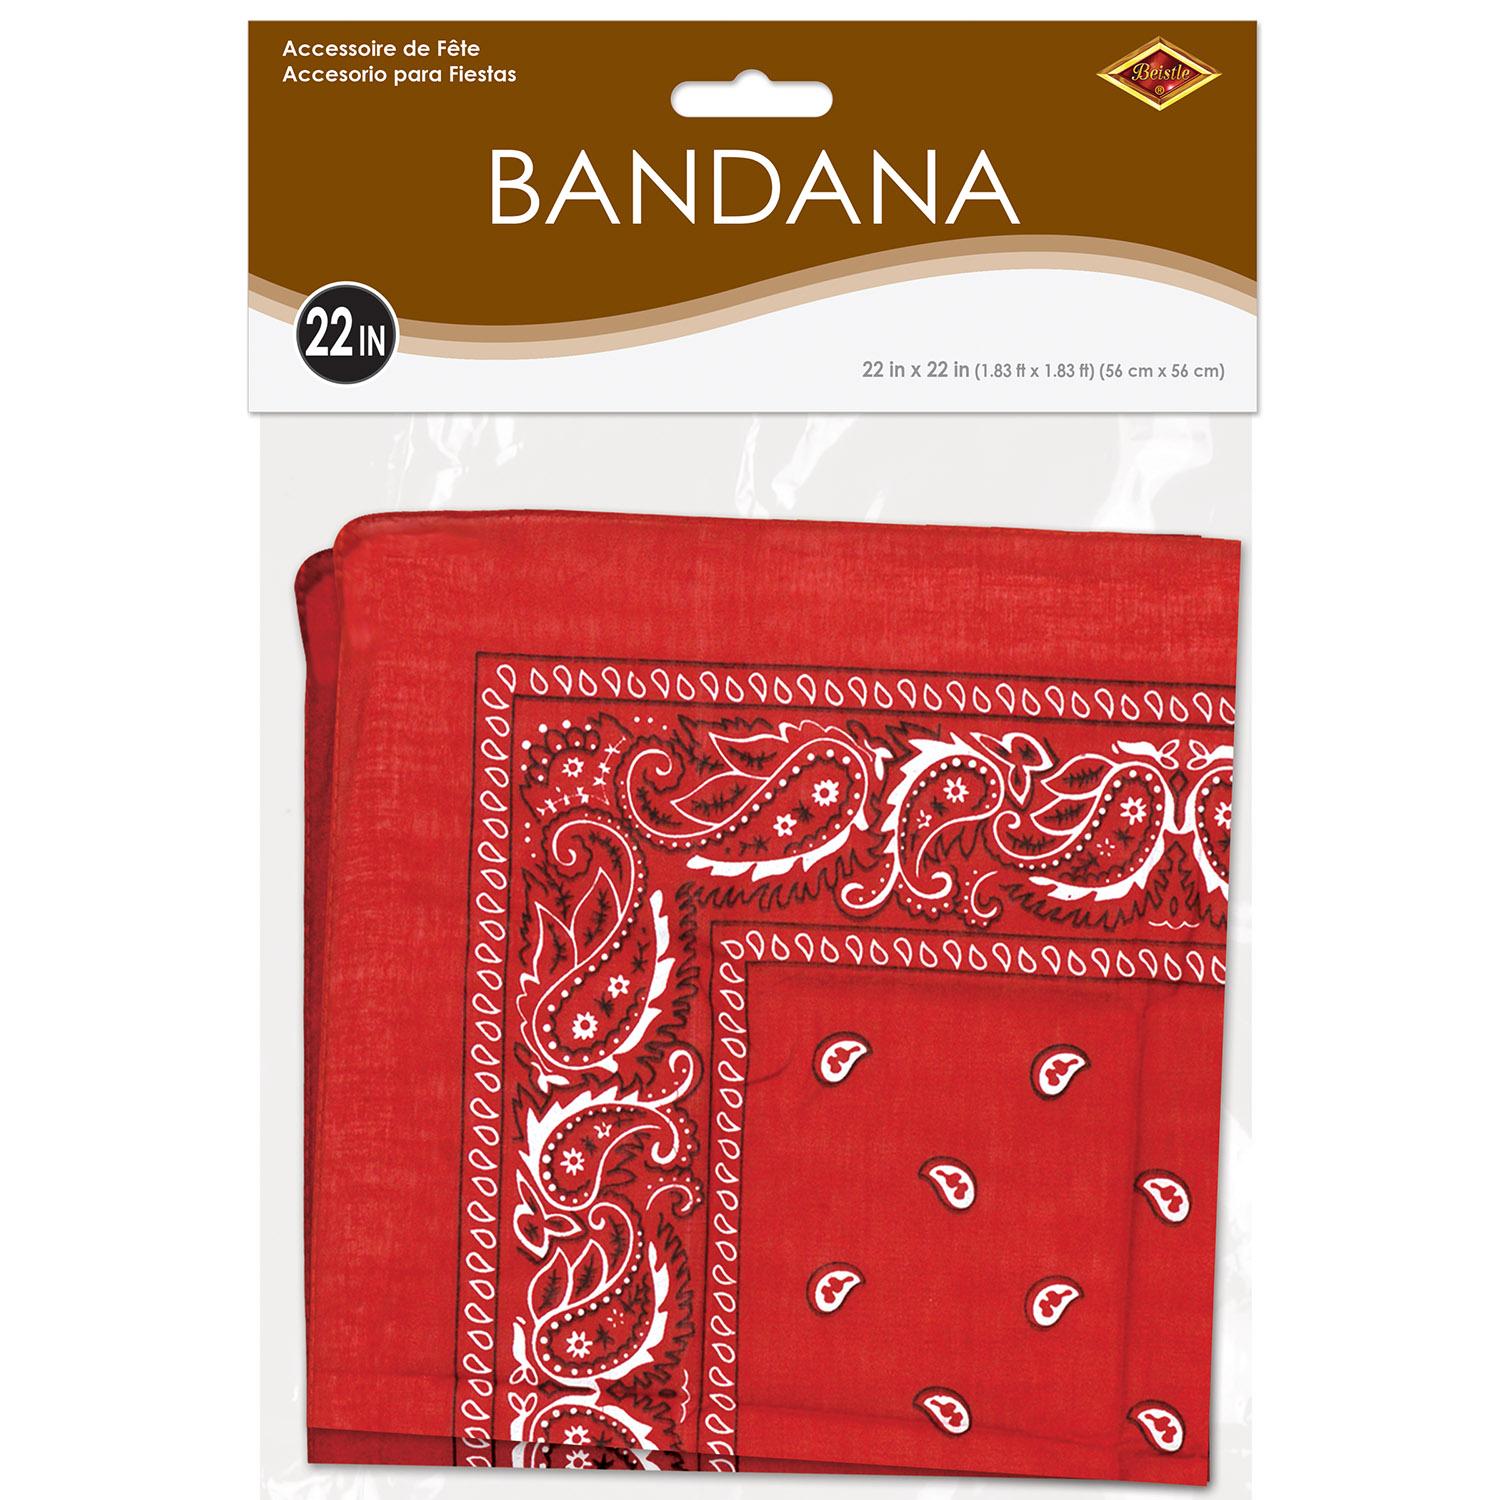 Red Bandana